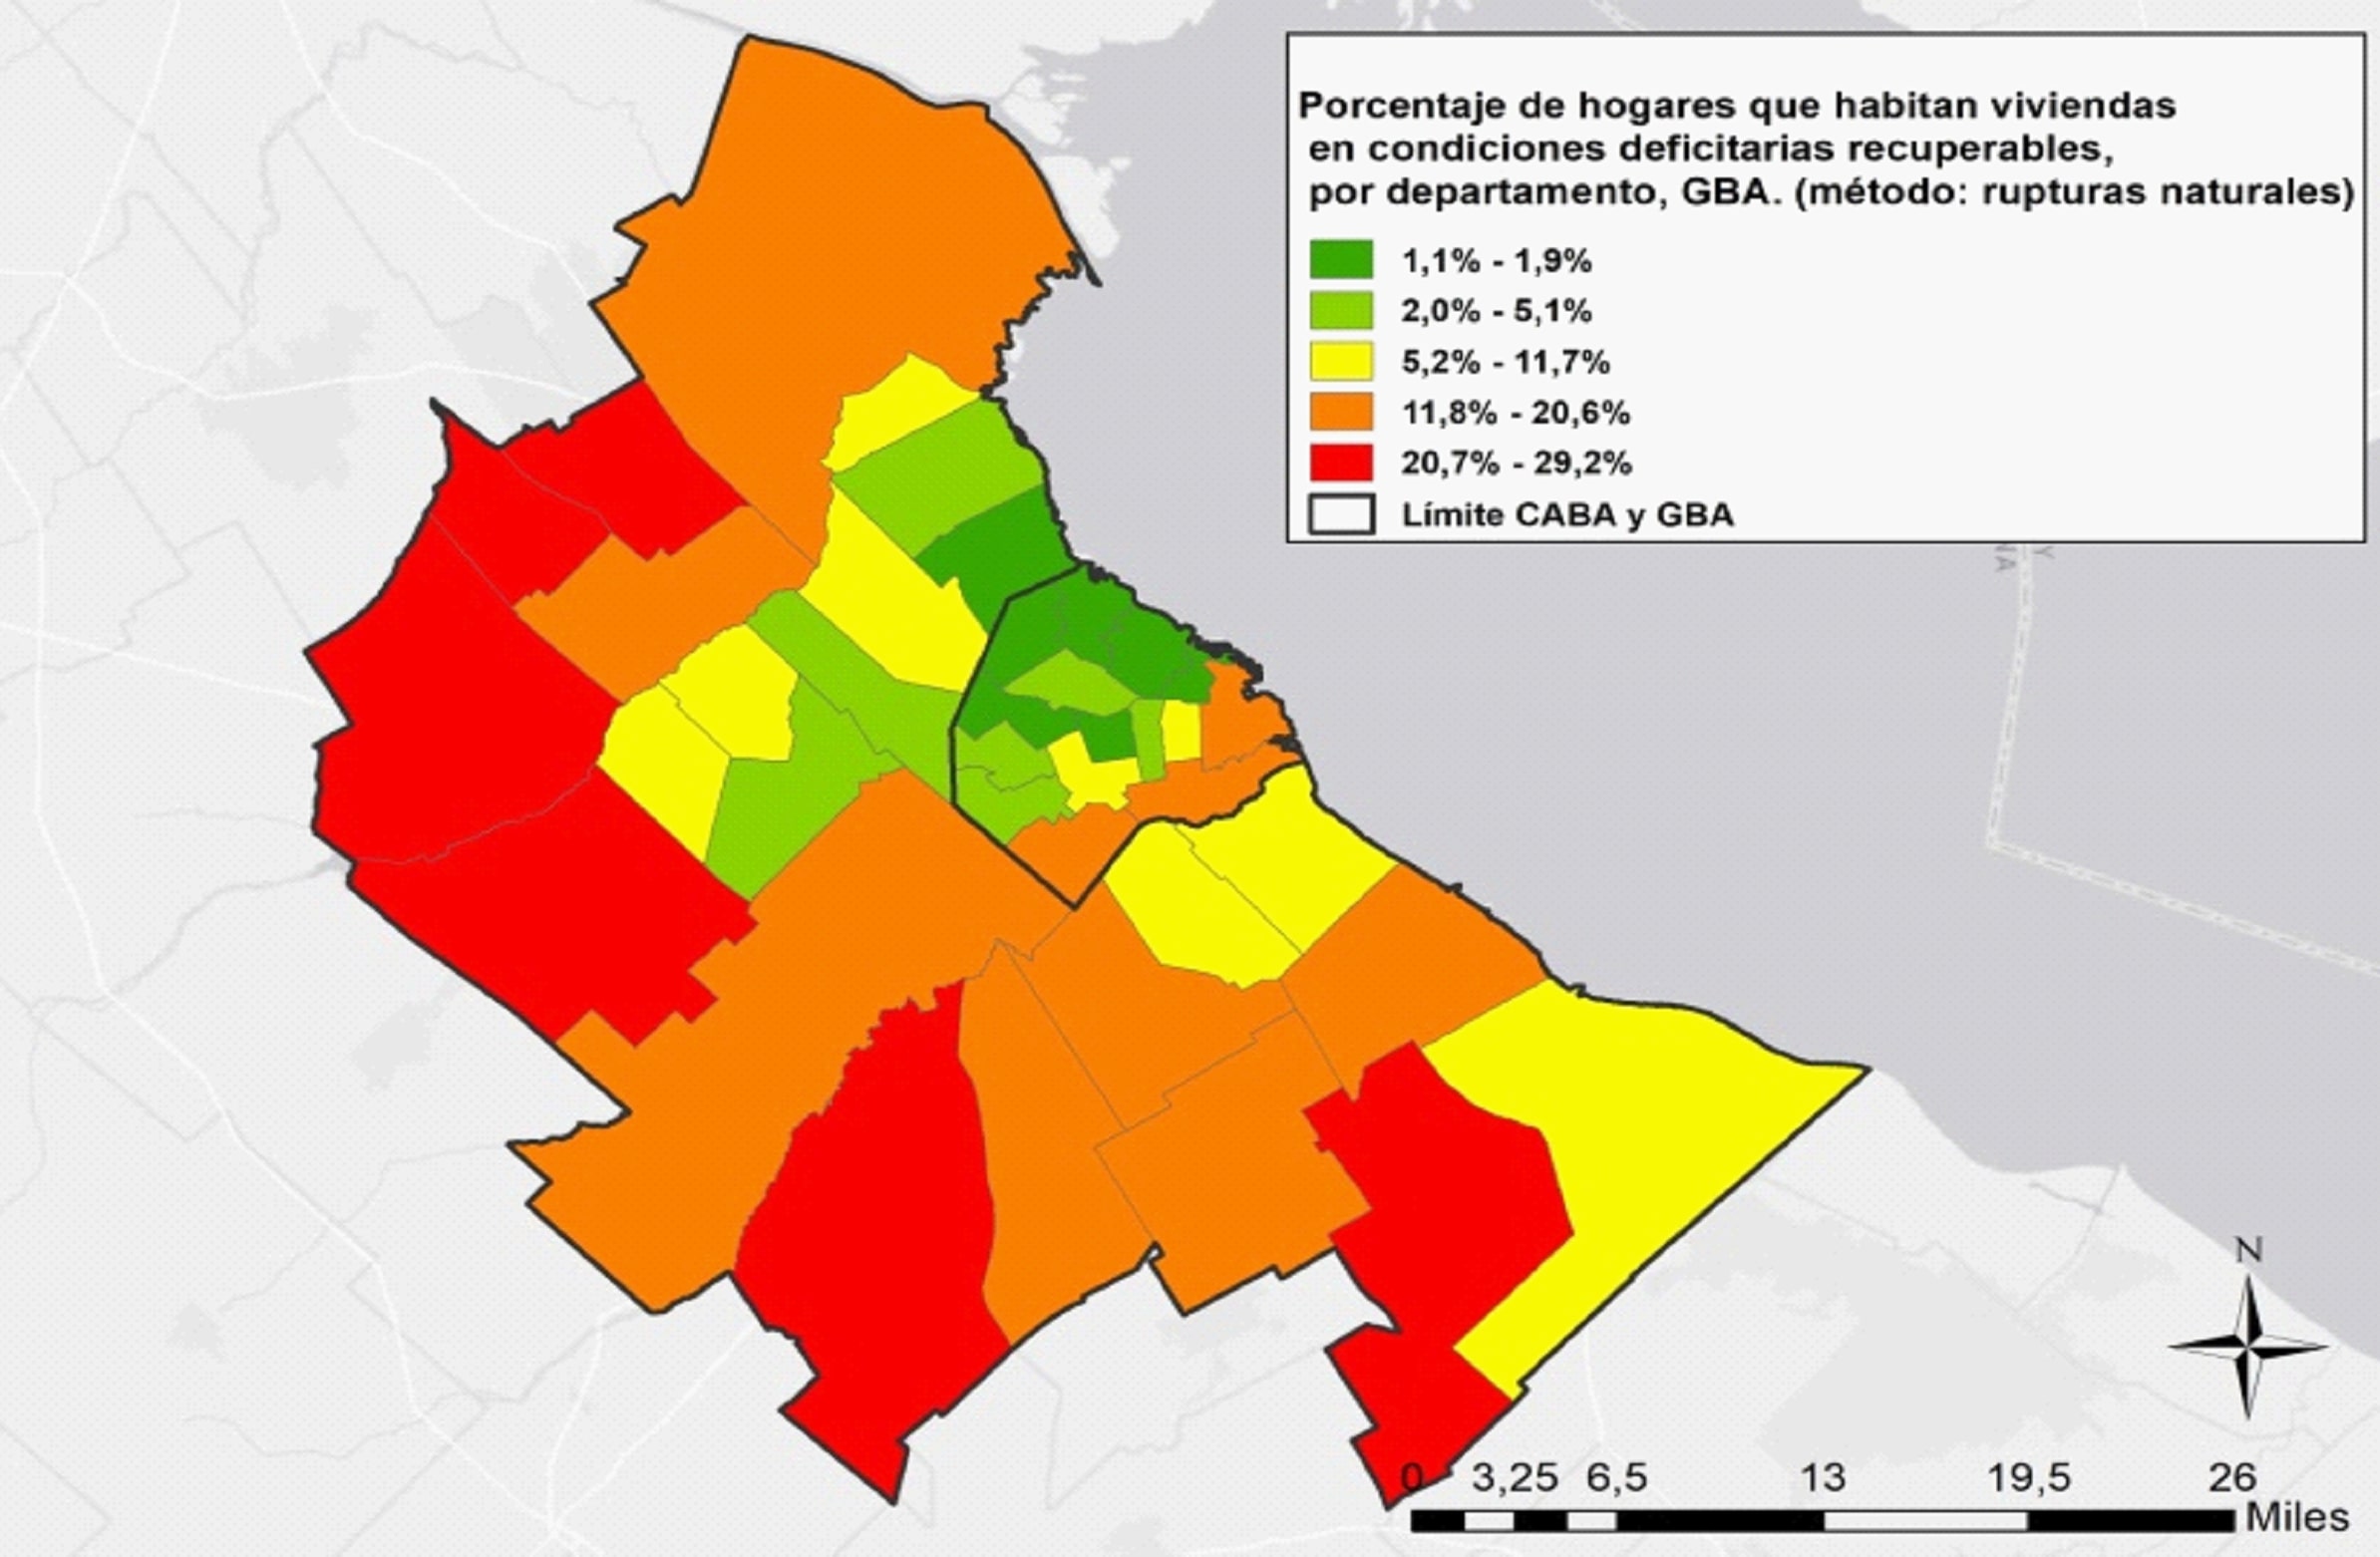 Porcentaje de hogares que habitan viviendas en condiciones deficitarias recuperables, por departamento, GBA, 2010